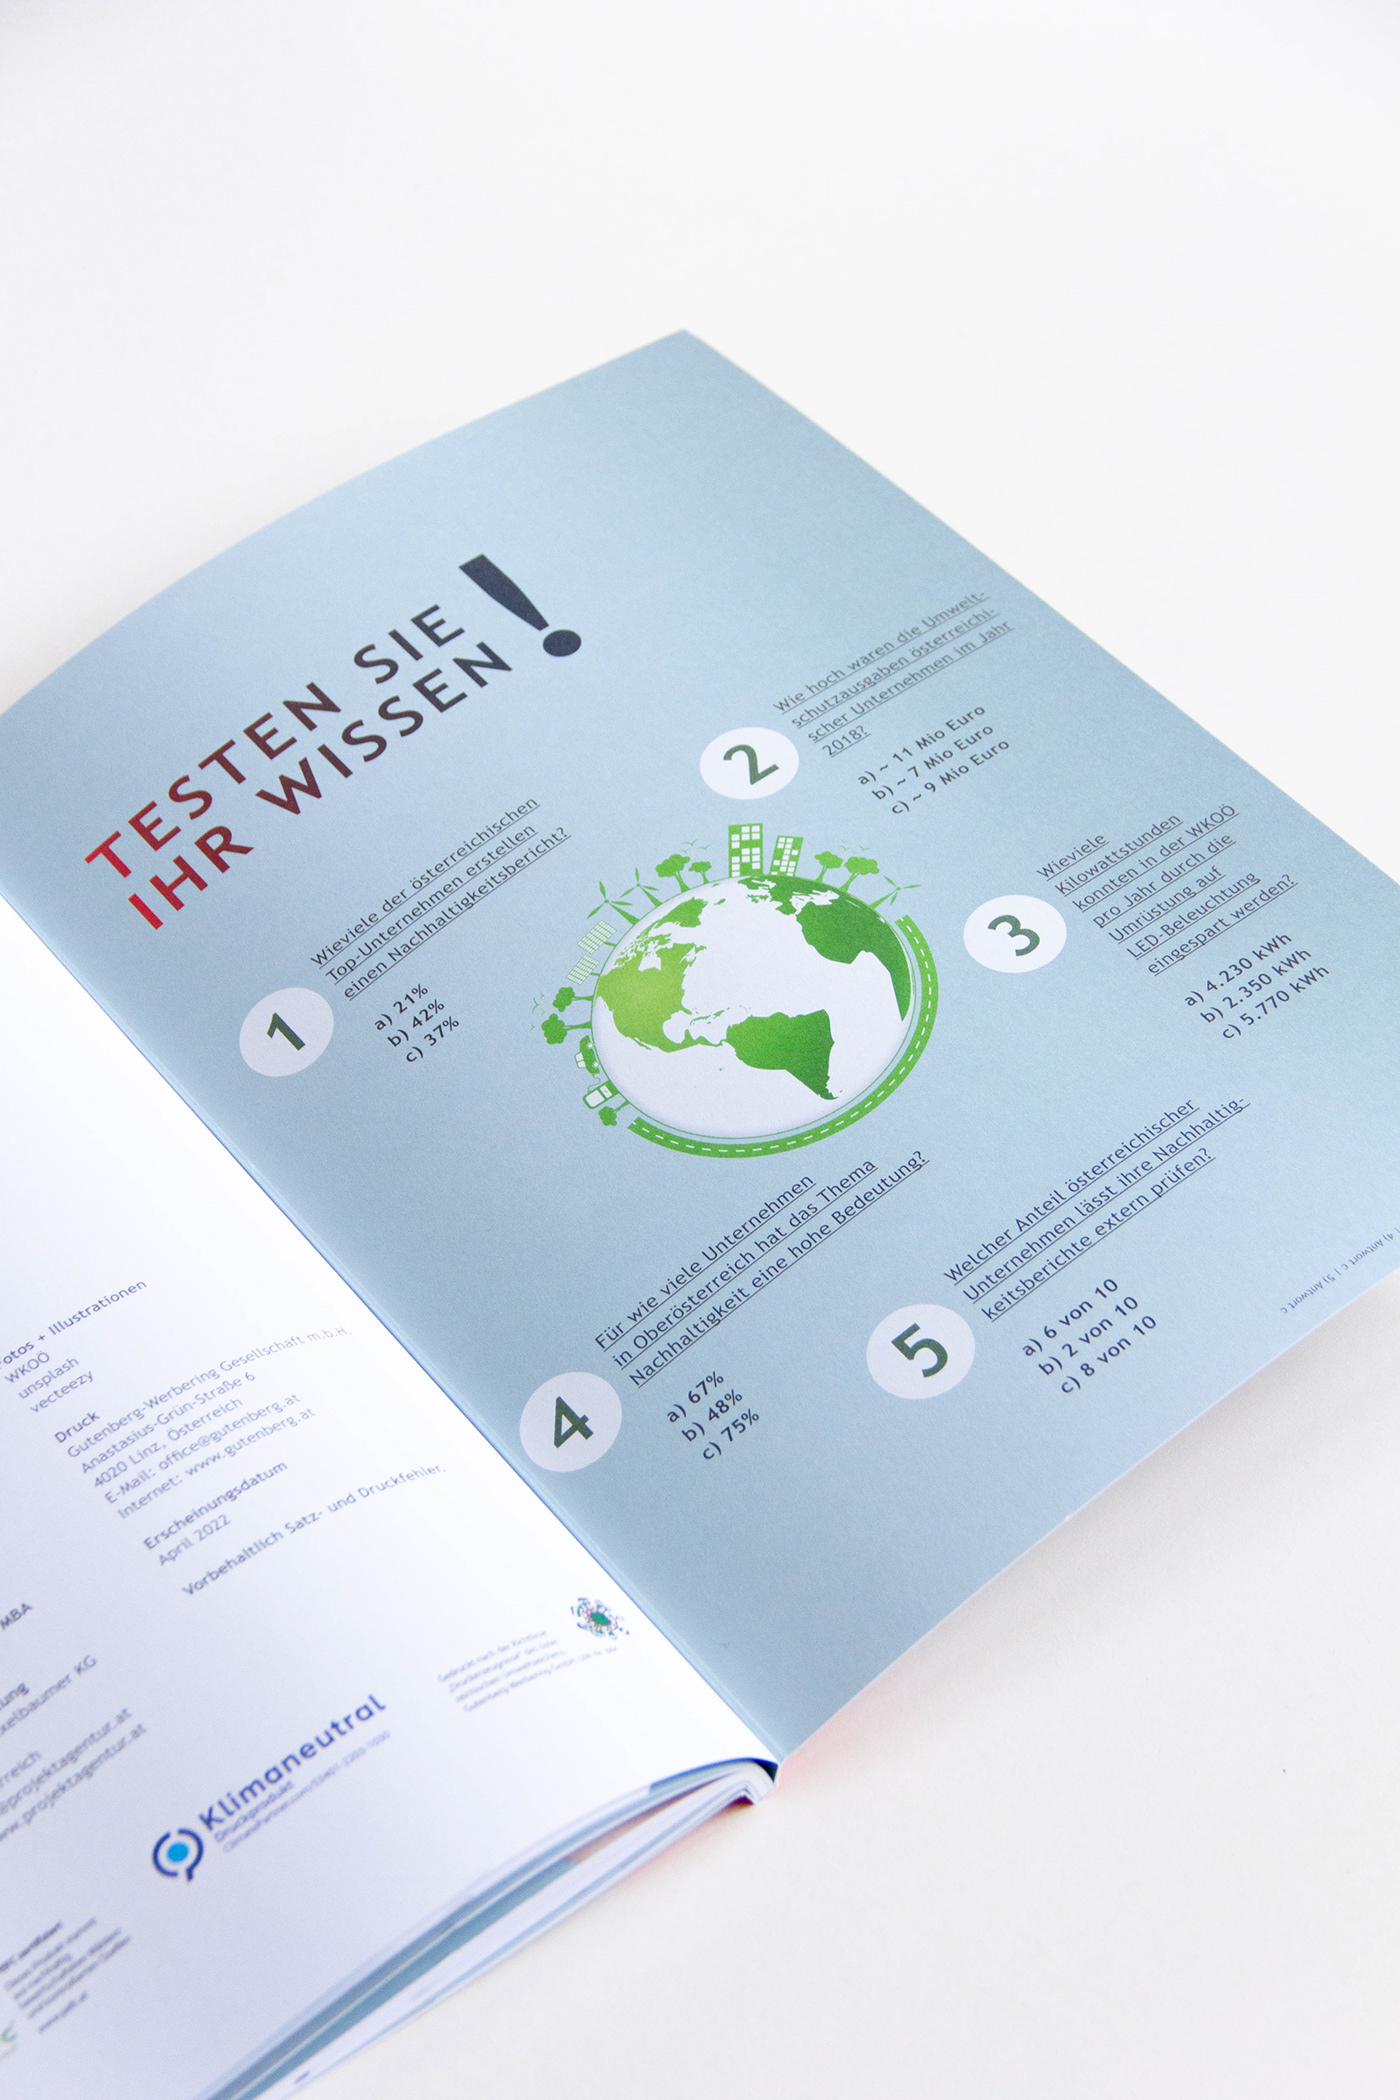 nachhaltigkeitsbericht nachhaltigkeitsprogramm reporting Sustainability sustainability report